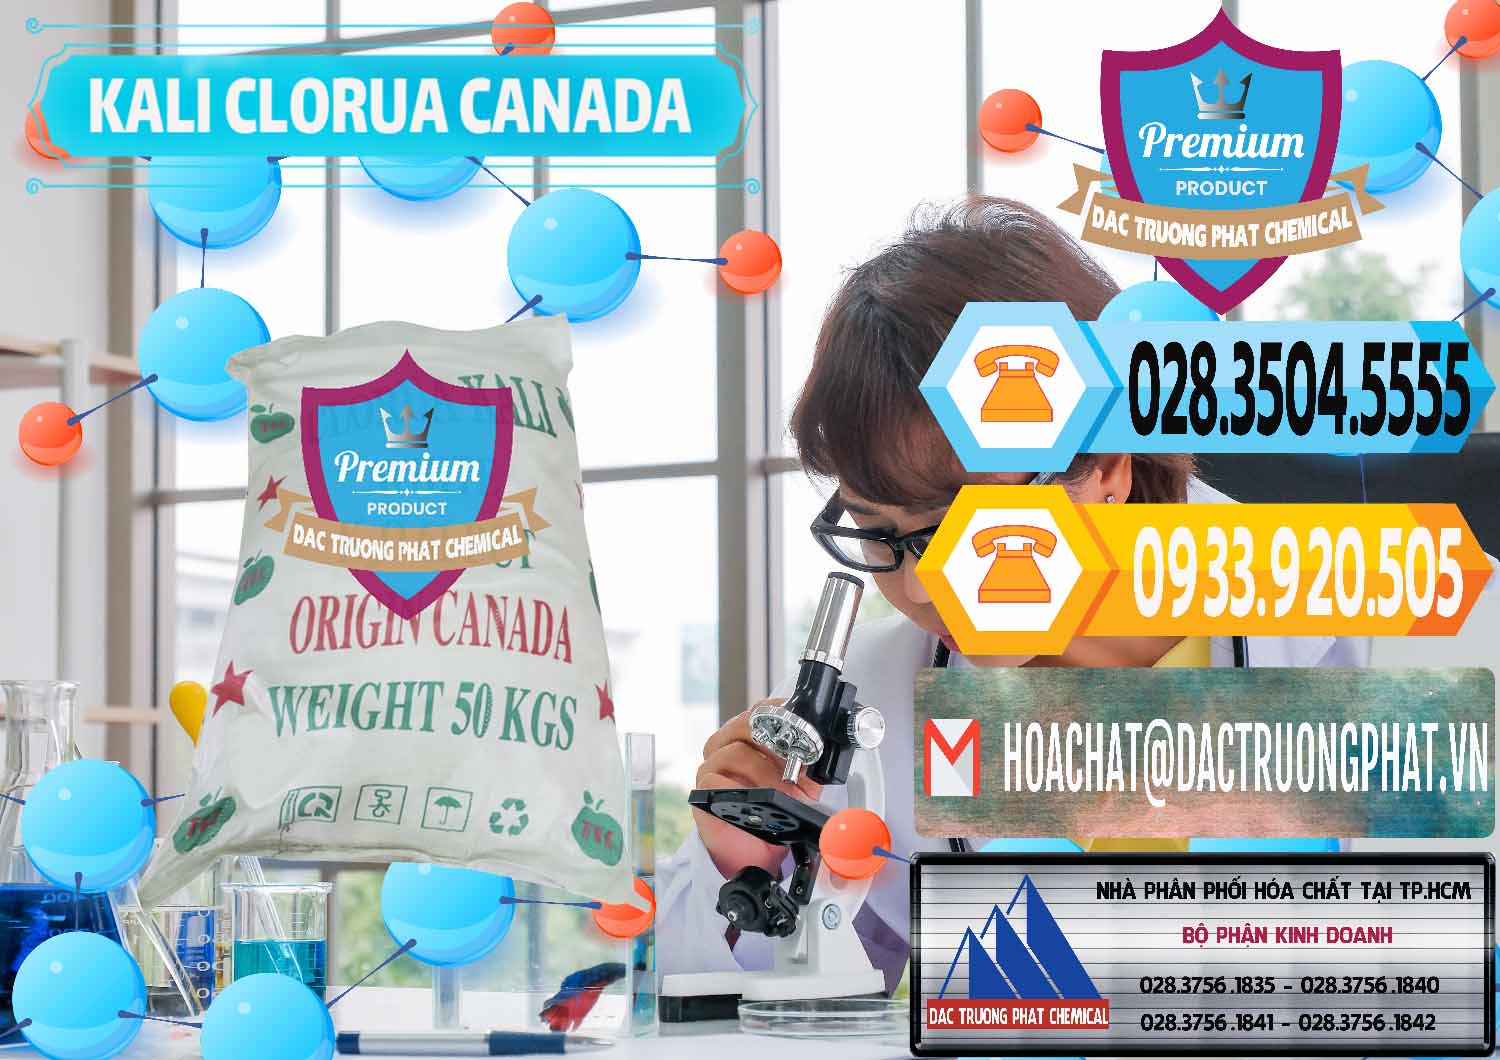 Đơn vị chuyên bán & cung cấp KCL – Kali Clorua Trắng Canada - 0437 - Công ty chuyên cung cấp - bán hóa chất tại TP.HCM - hoachattayrua.net